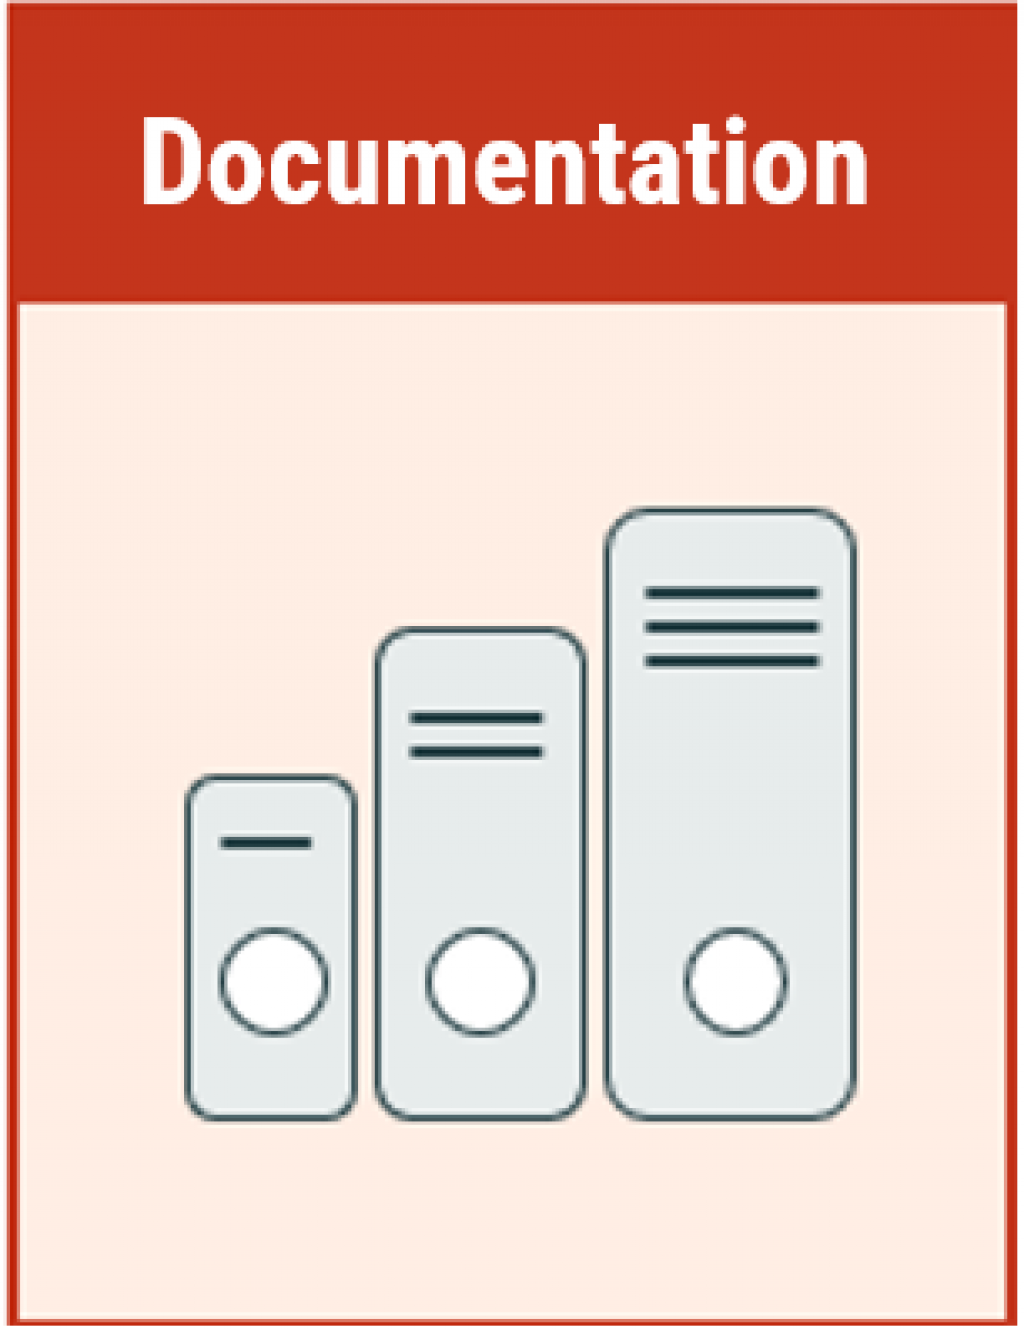 documentation principle of information models